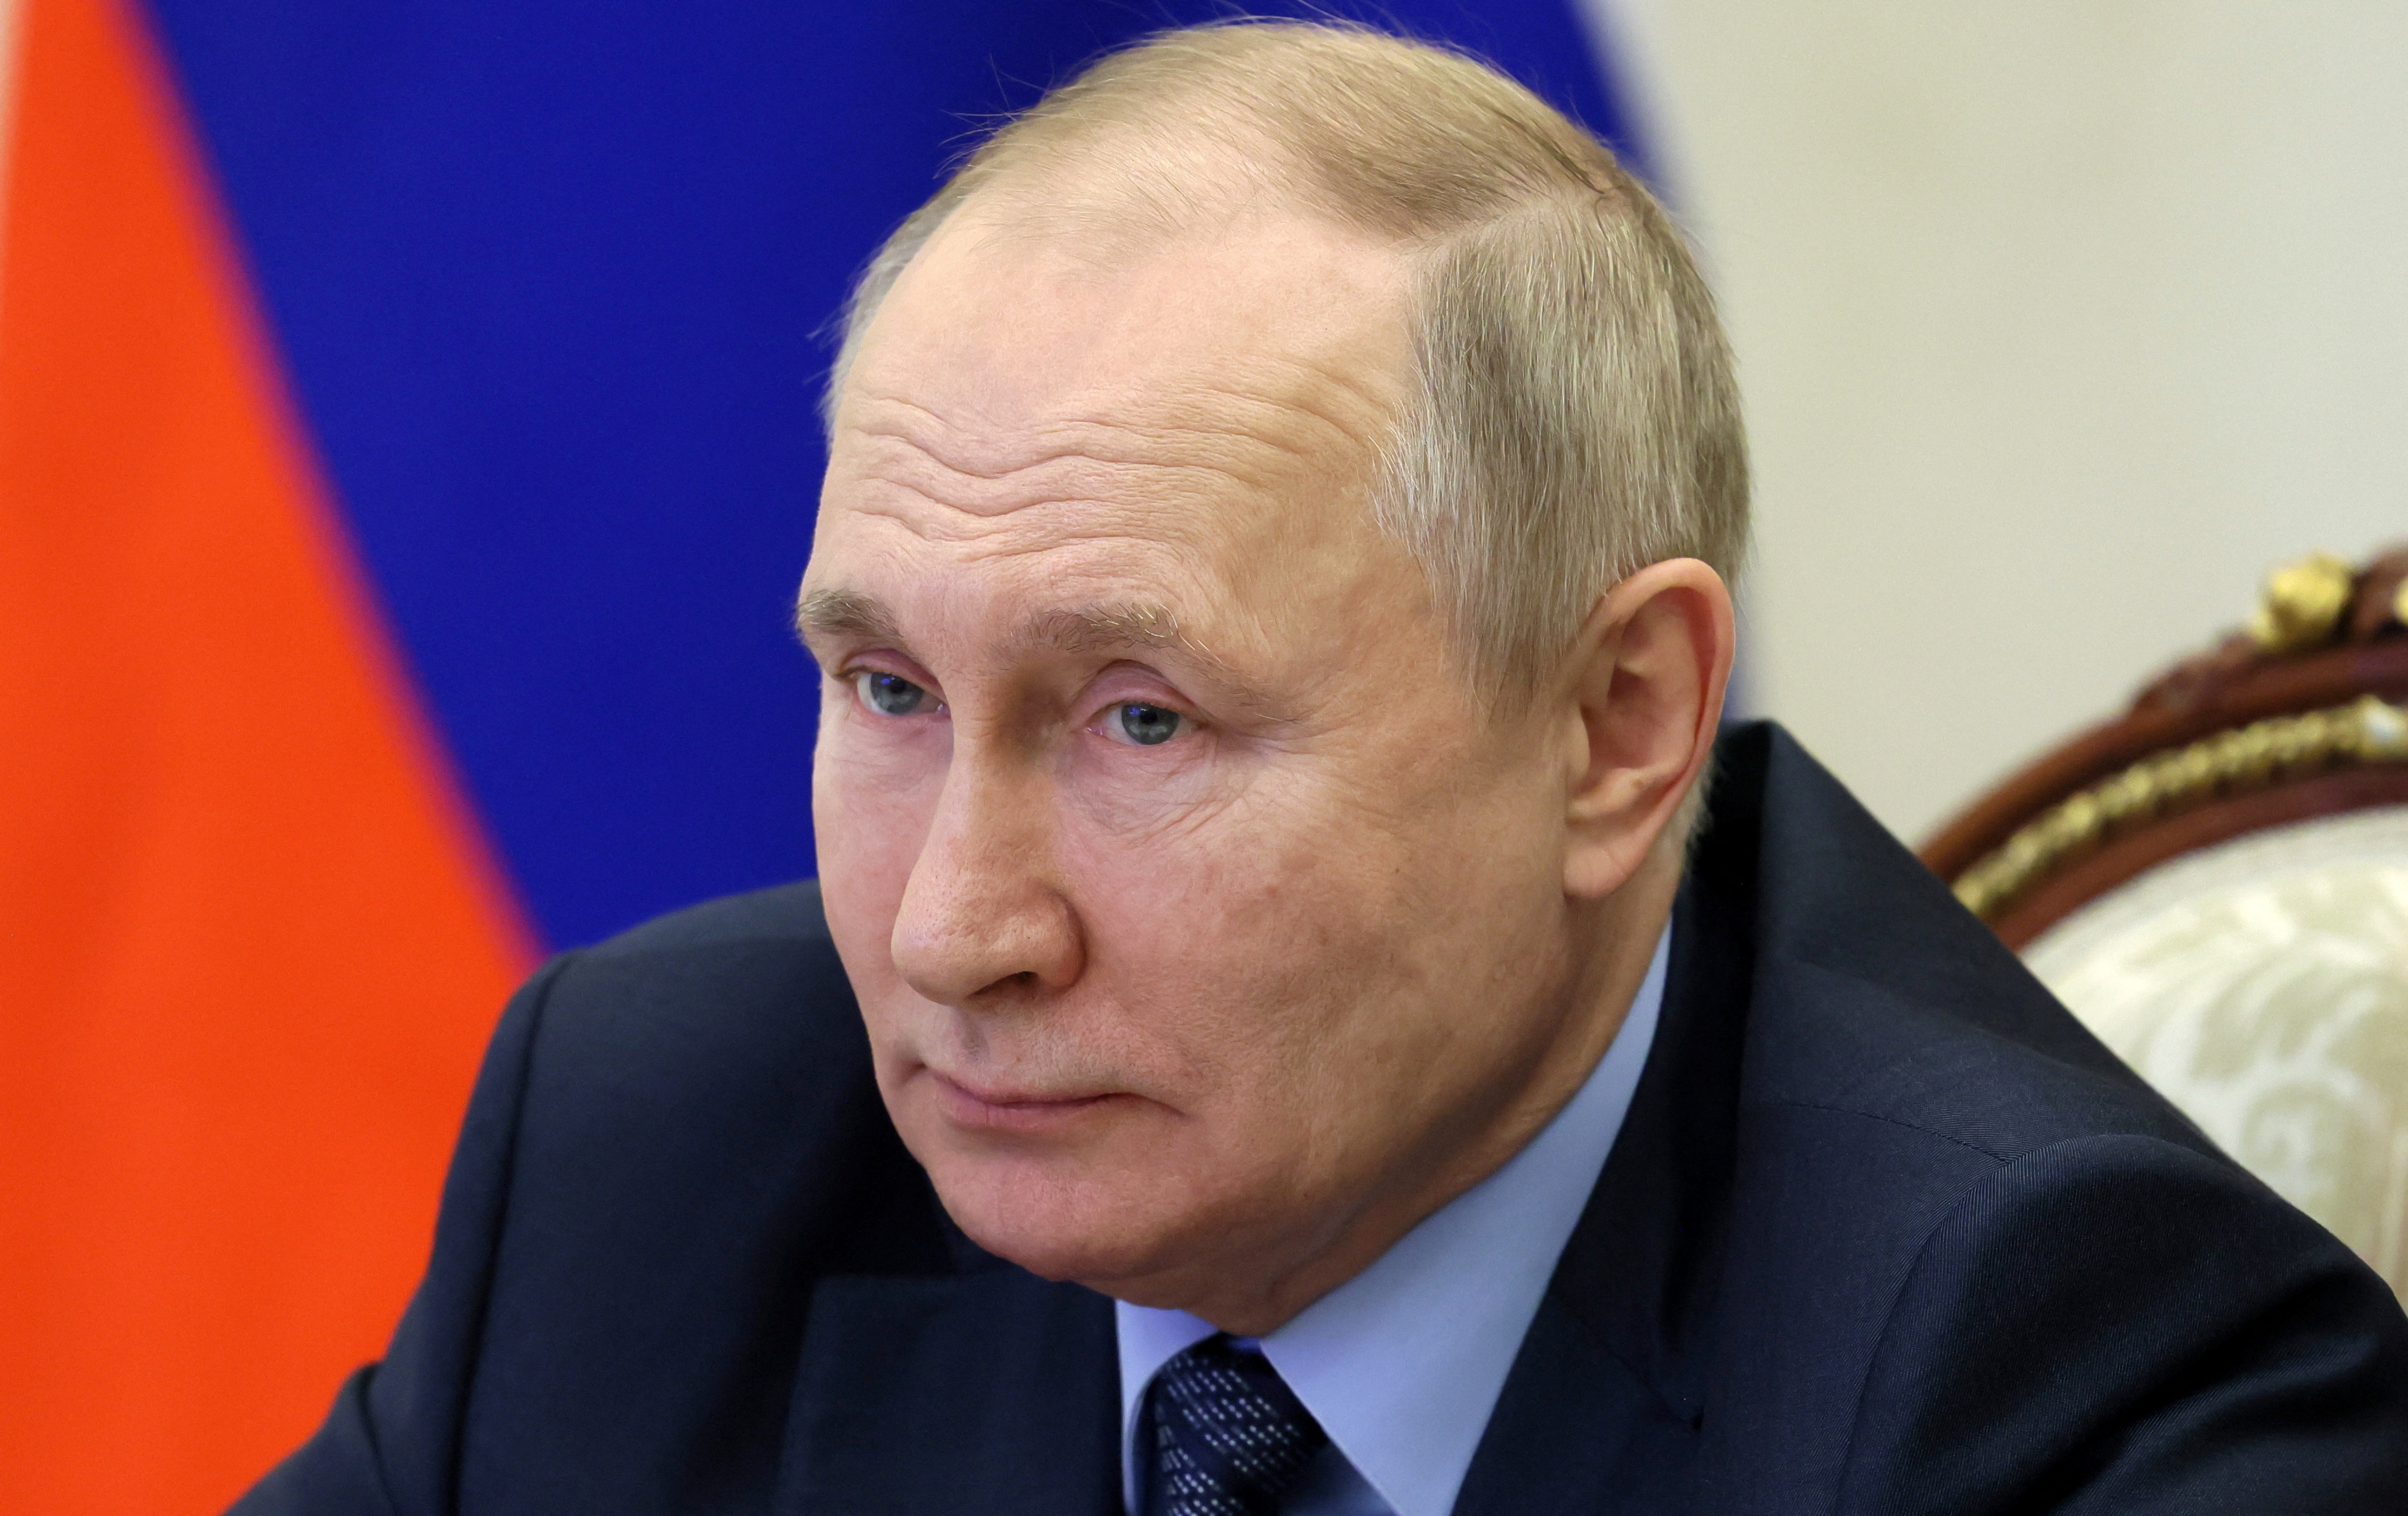 La atención, ahora, está sobre Vladimir Putin y su reacción ante el acuerdo alcanzado por la UE (REUTERS)